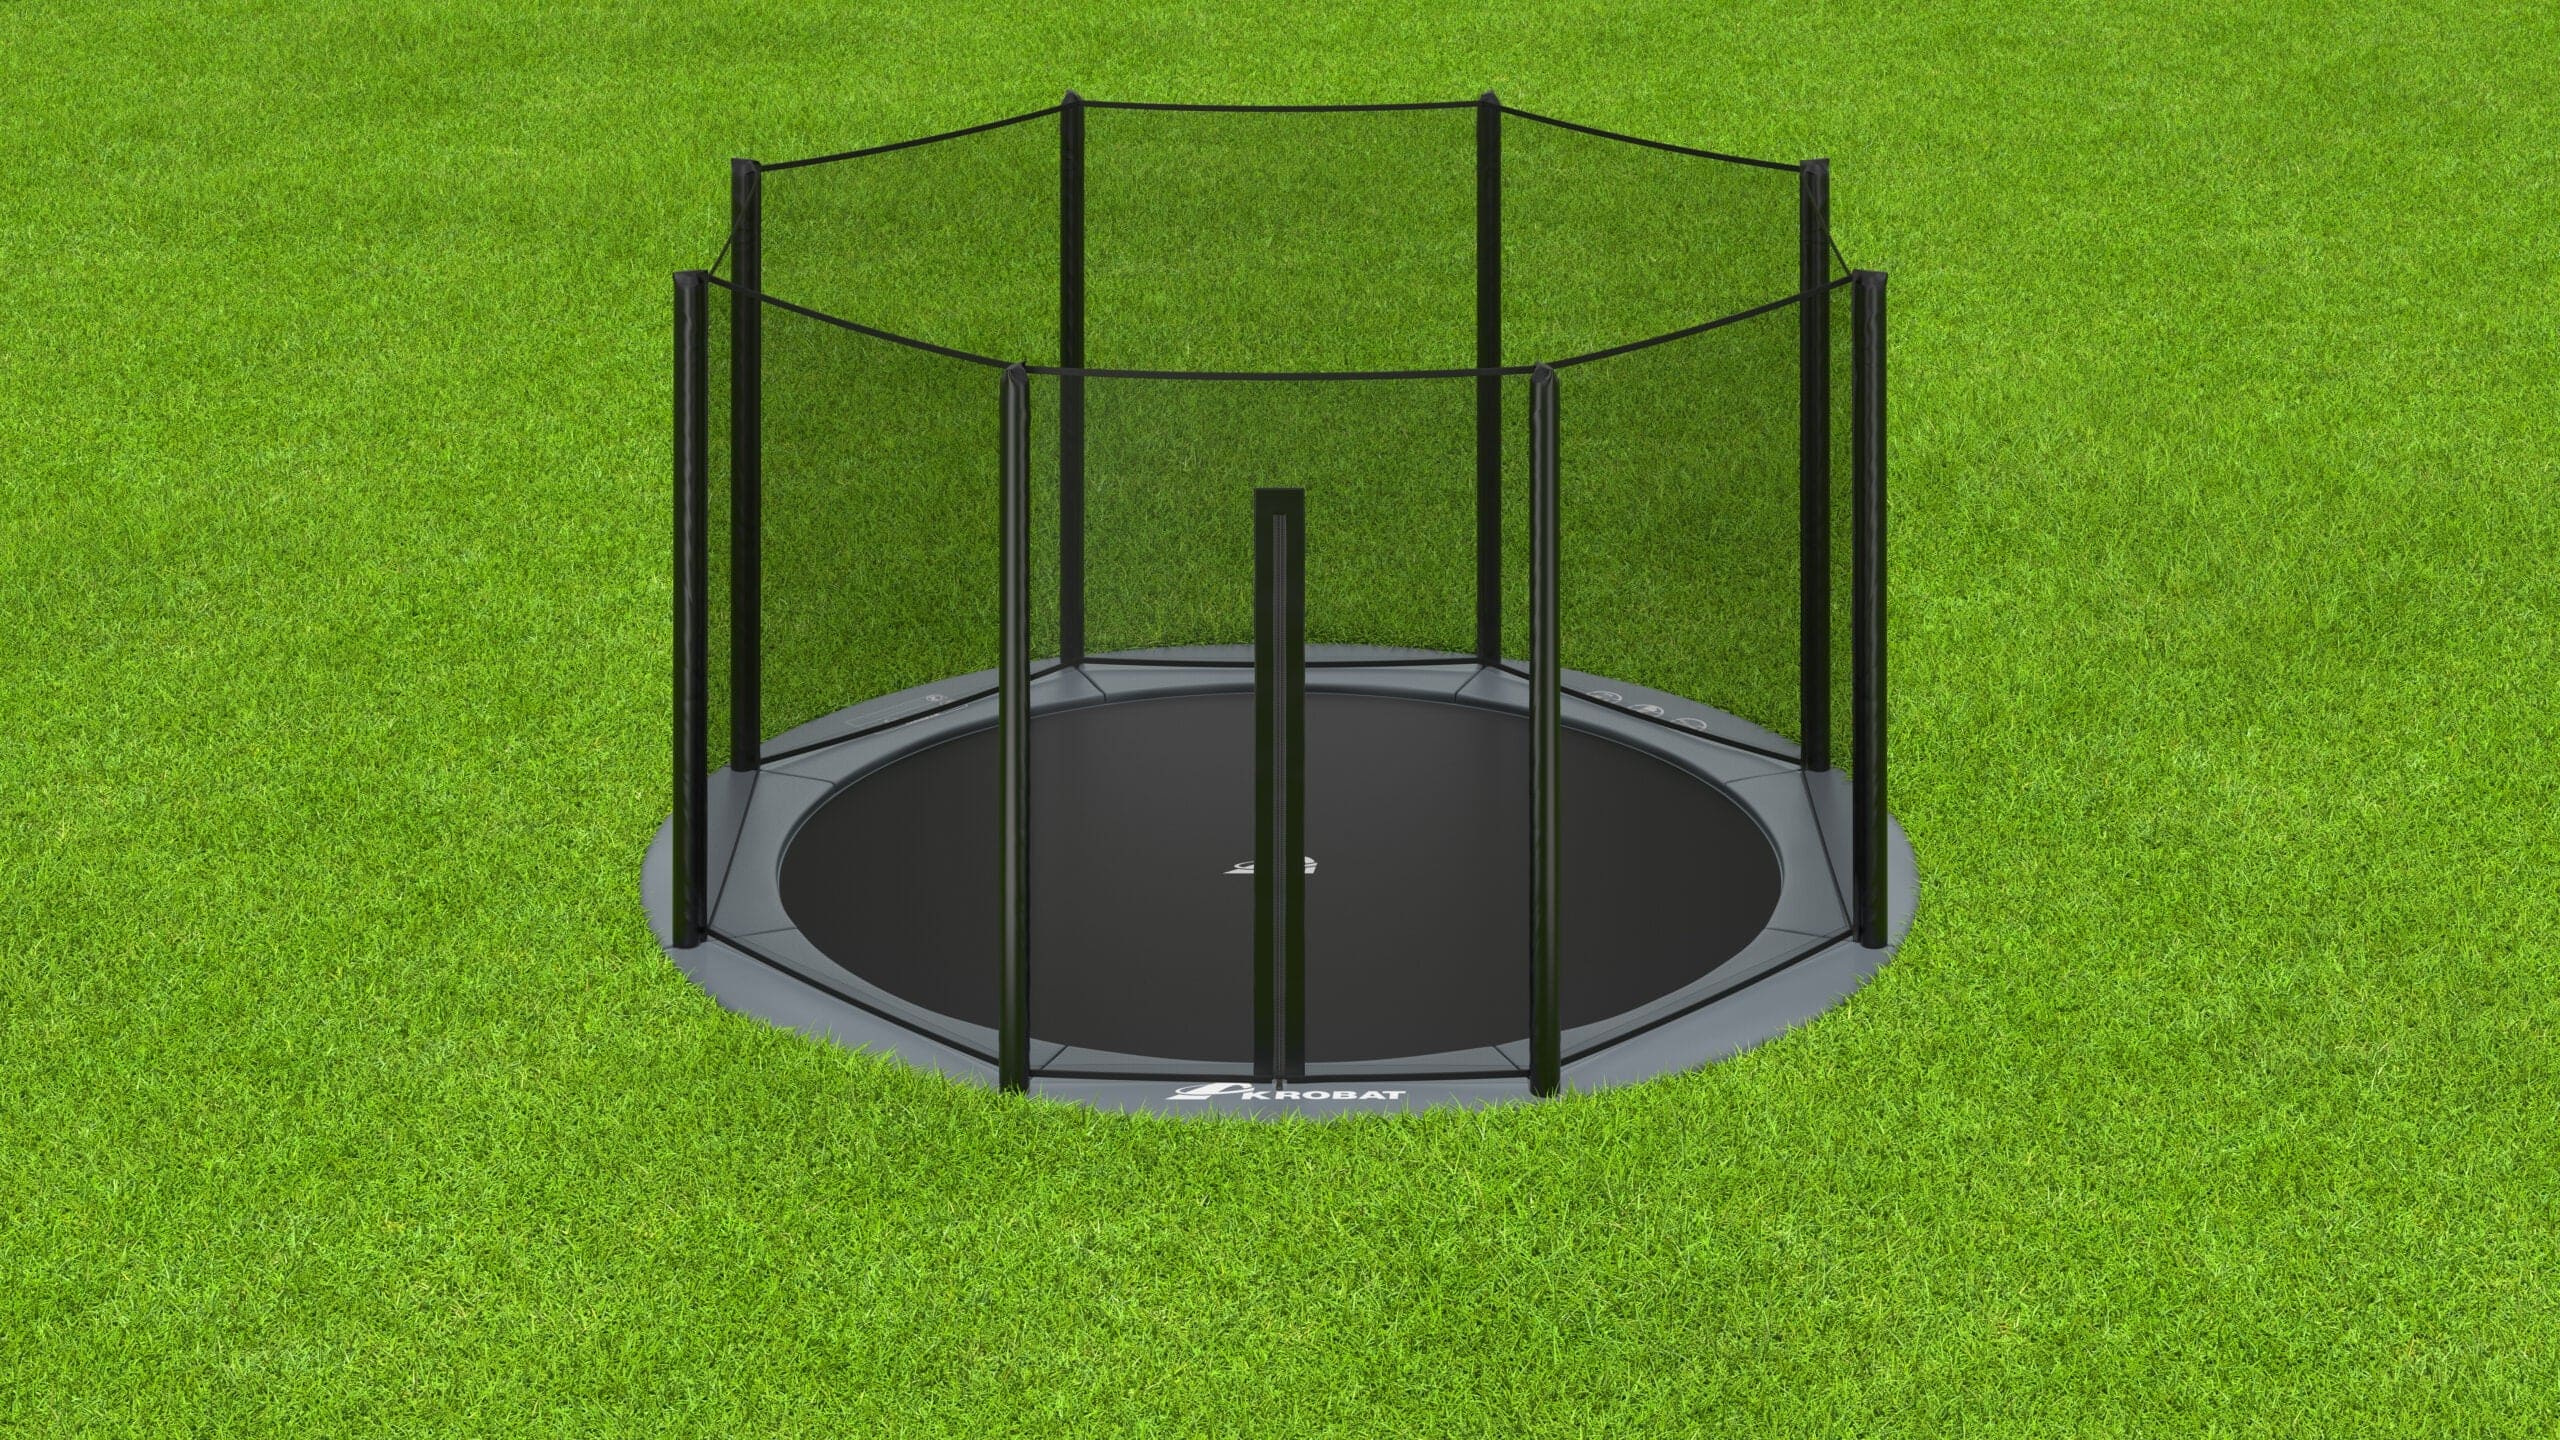 14' Round Akrobat Safety Net Enclosure System